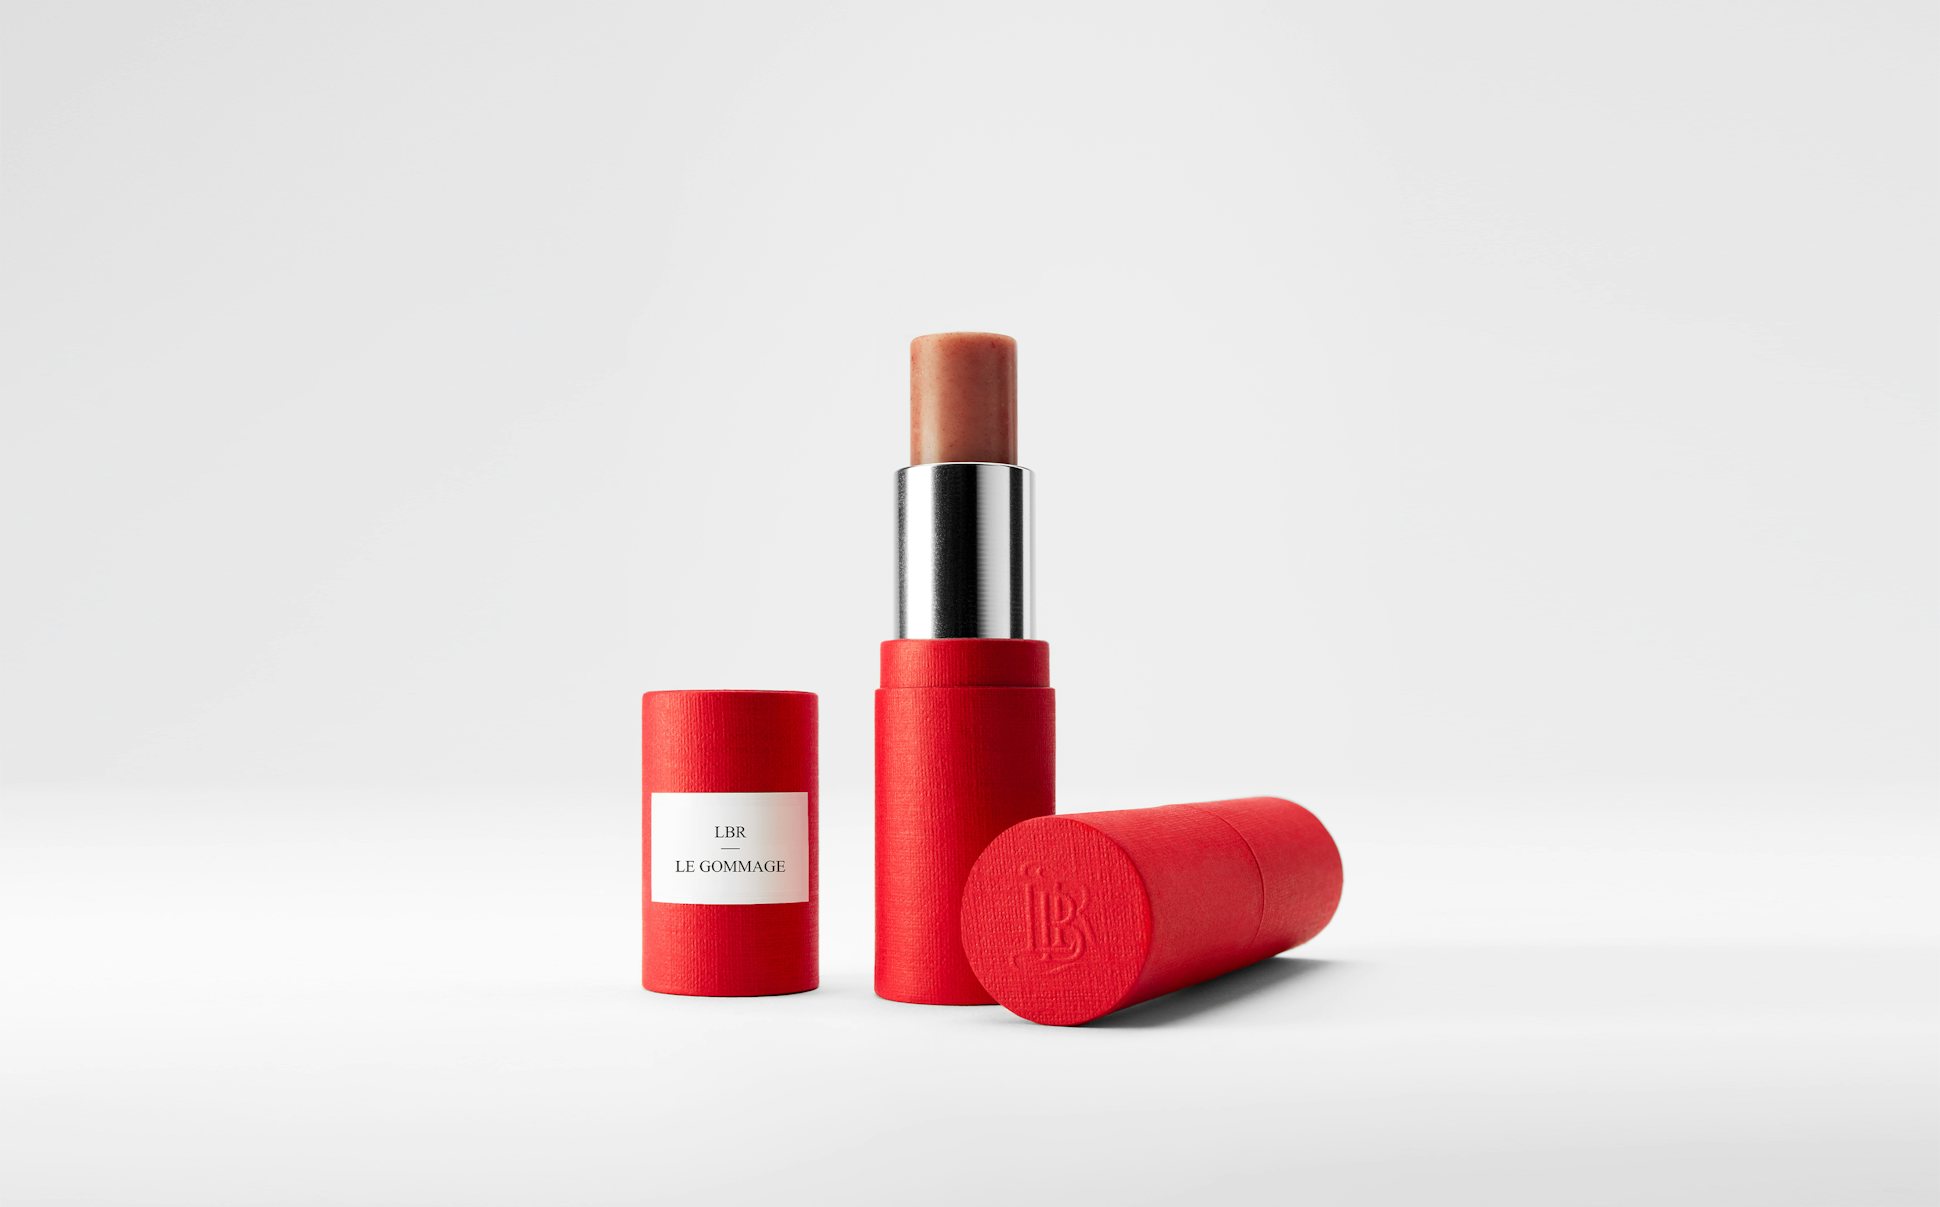 La bouche rouge Lip Scrub lipstick in the red paper case